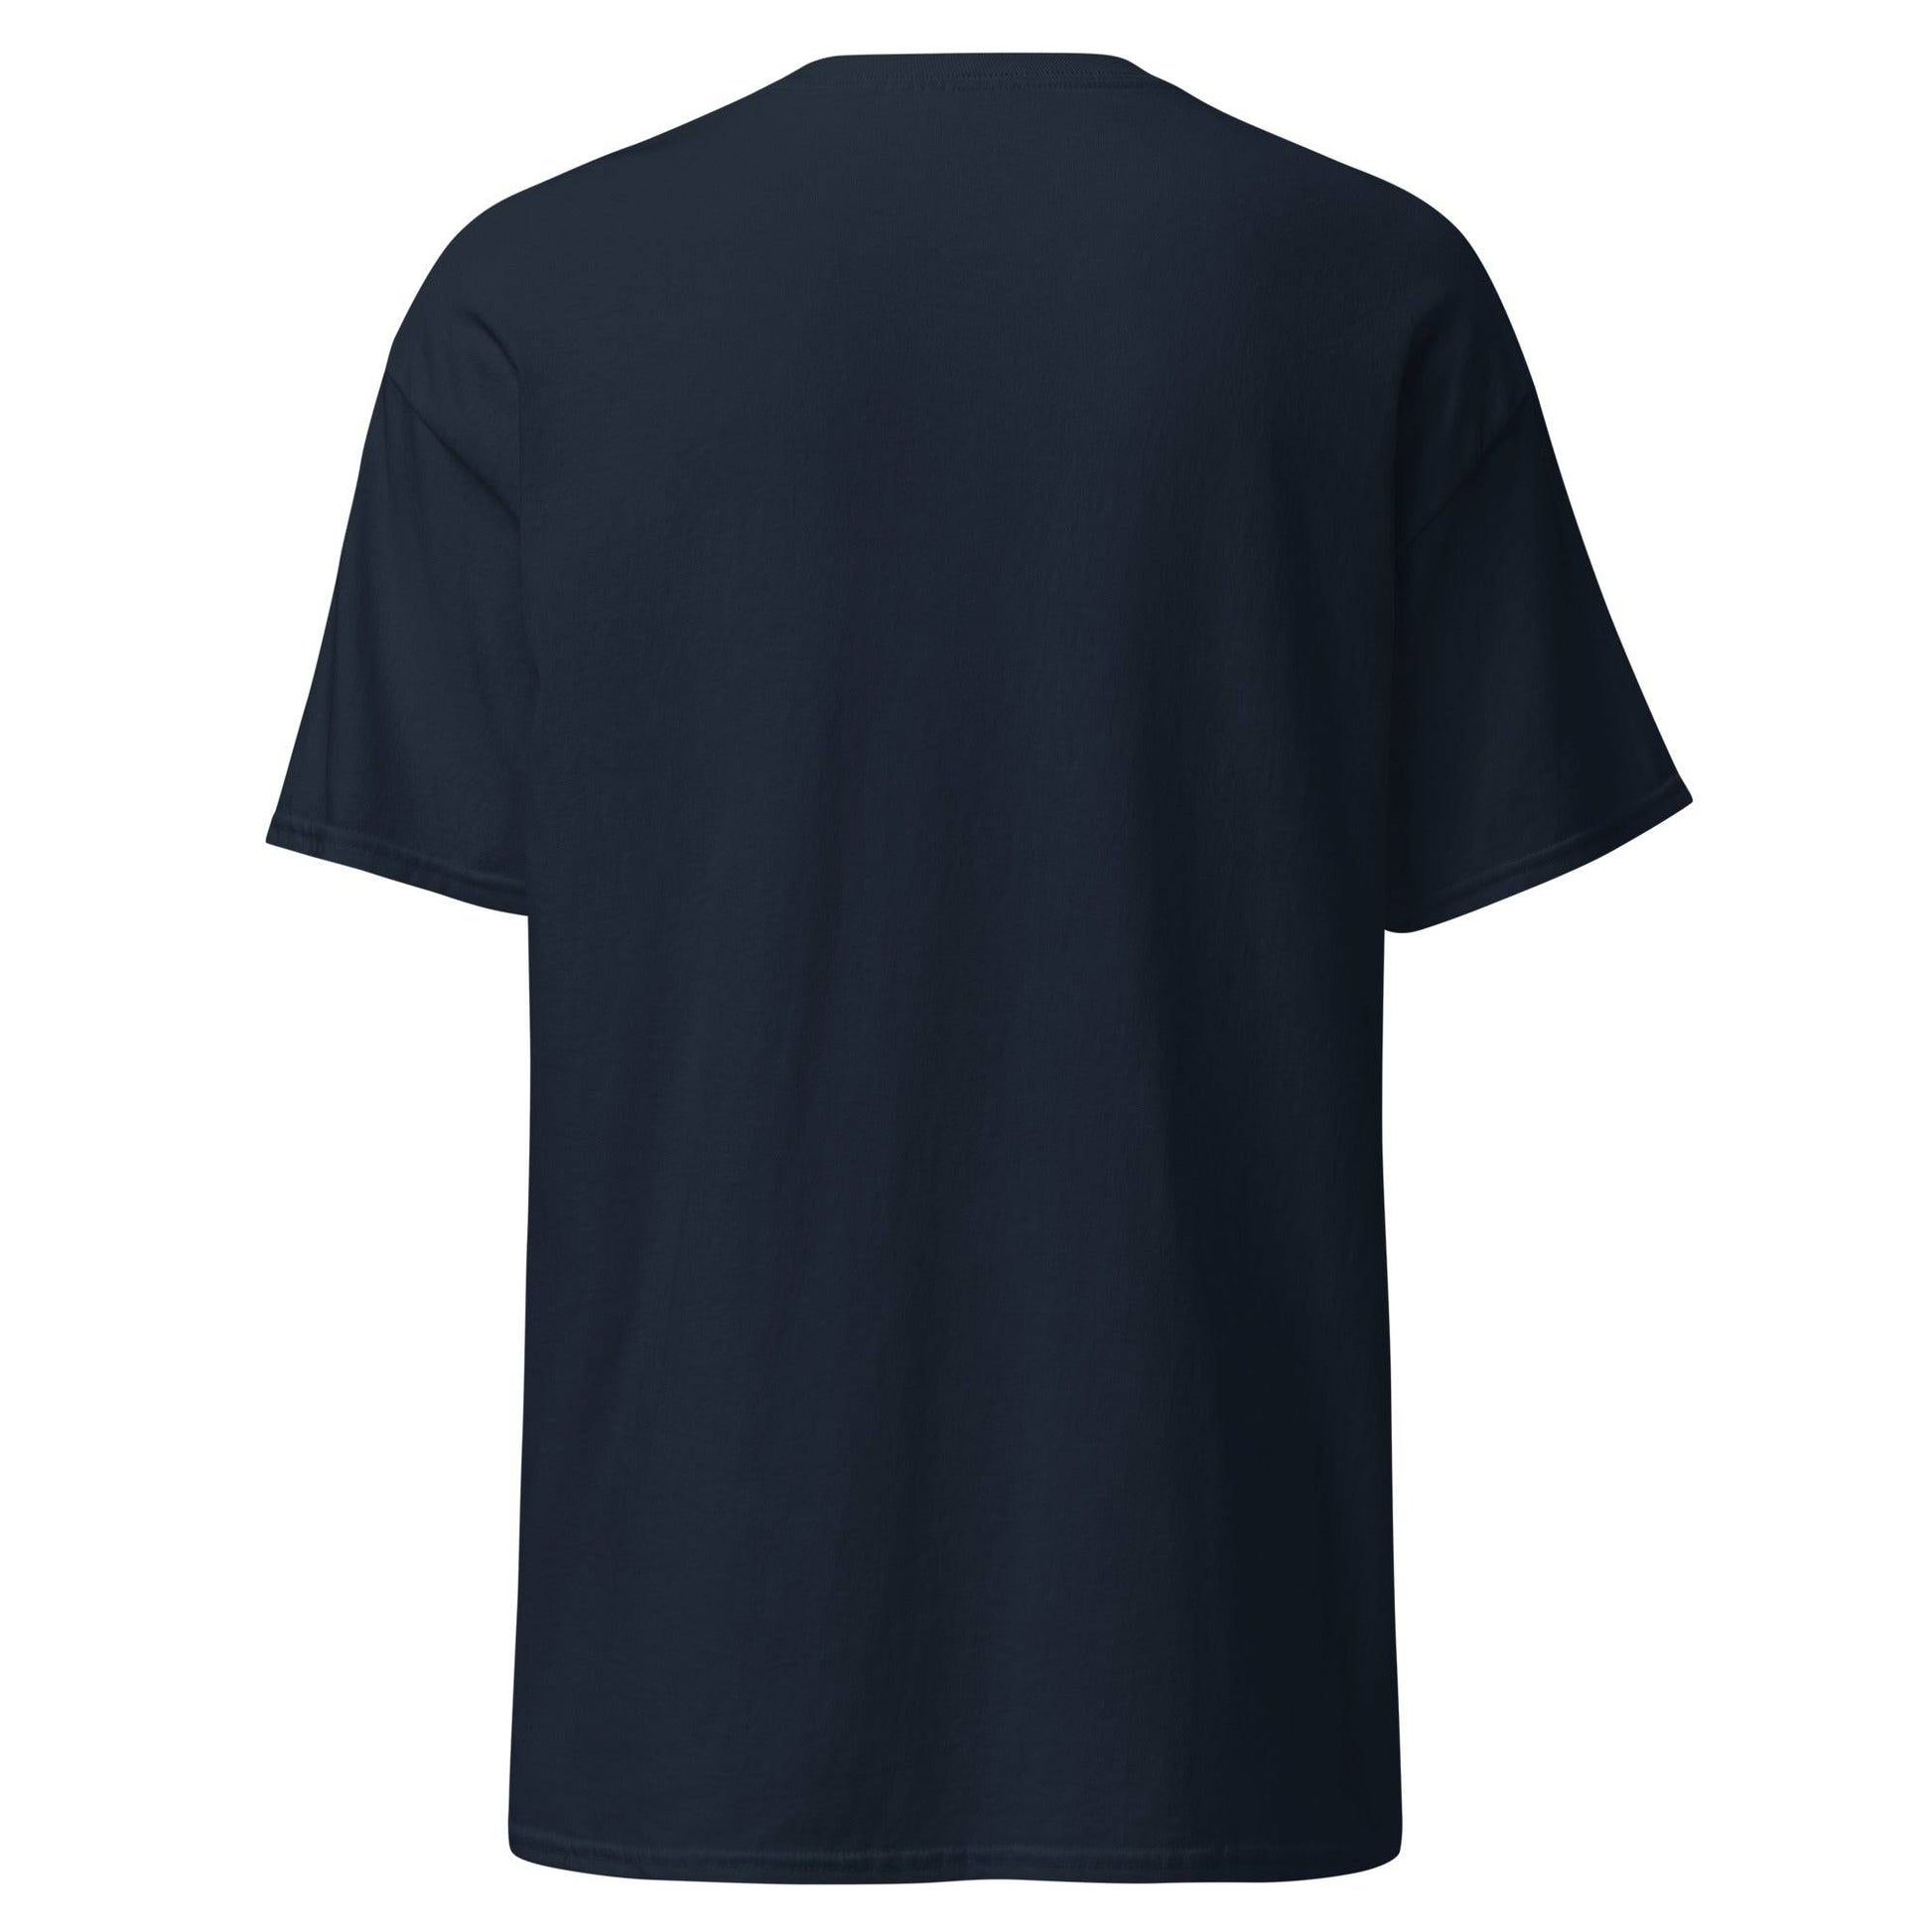 Camiseta navy Celta equipo fútbol Un escudo no meu peito back